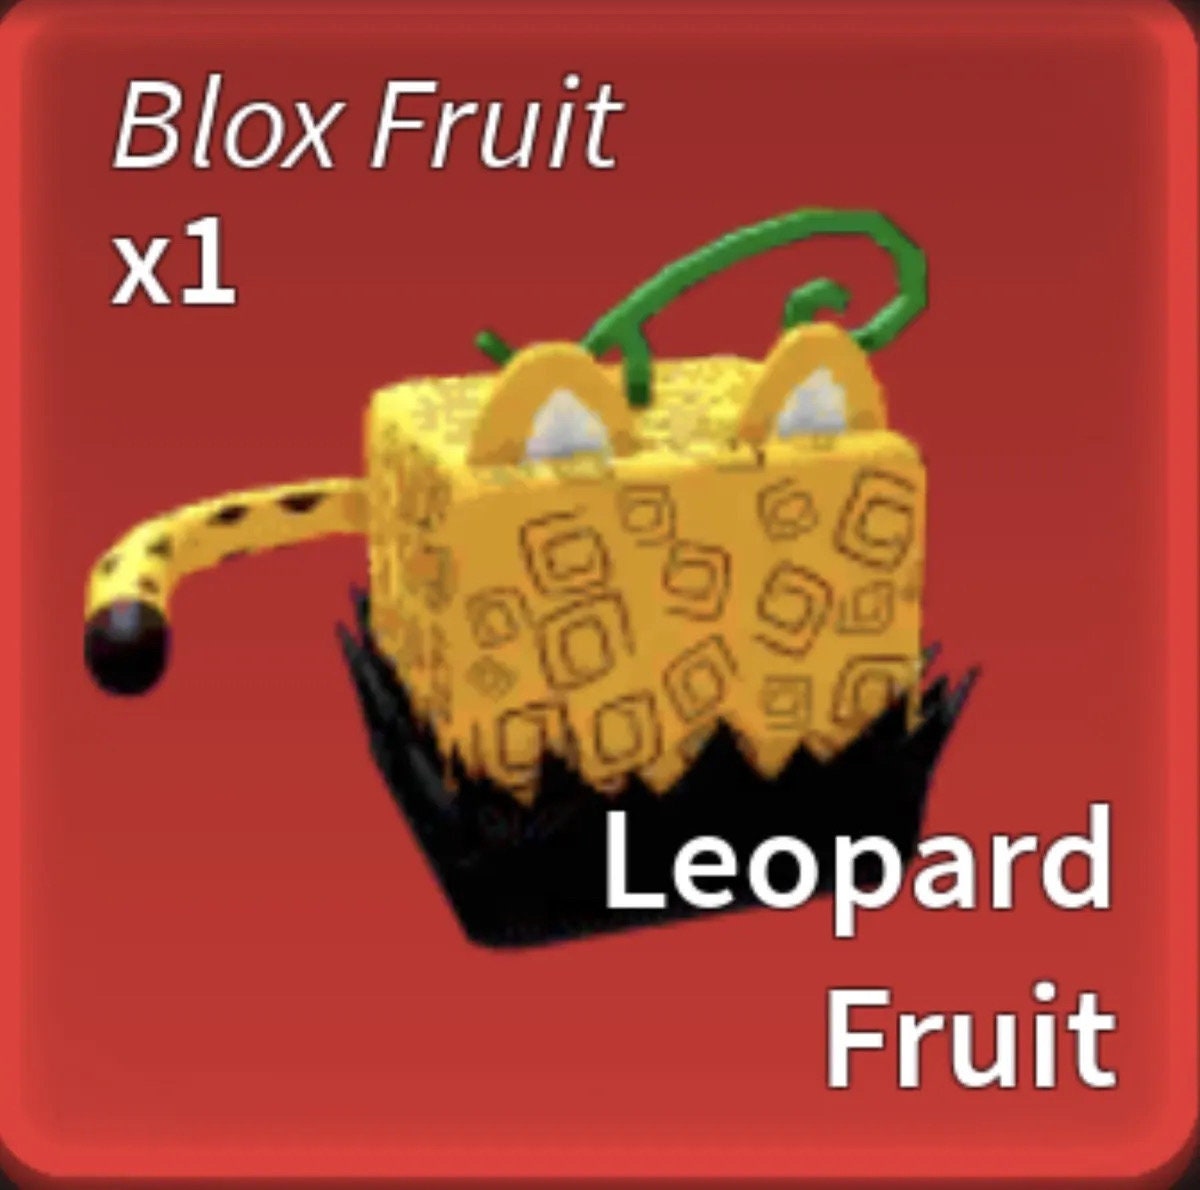 blox fruit leopard sus